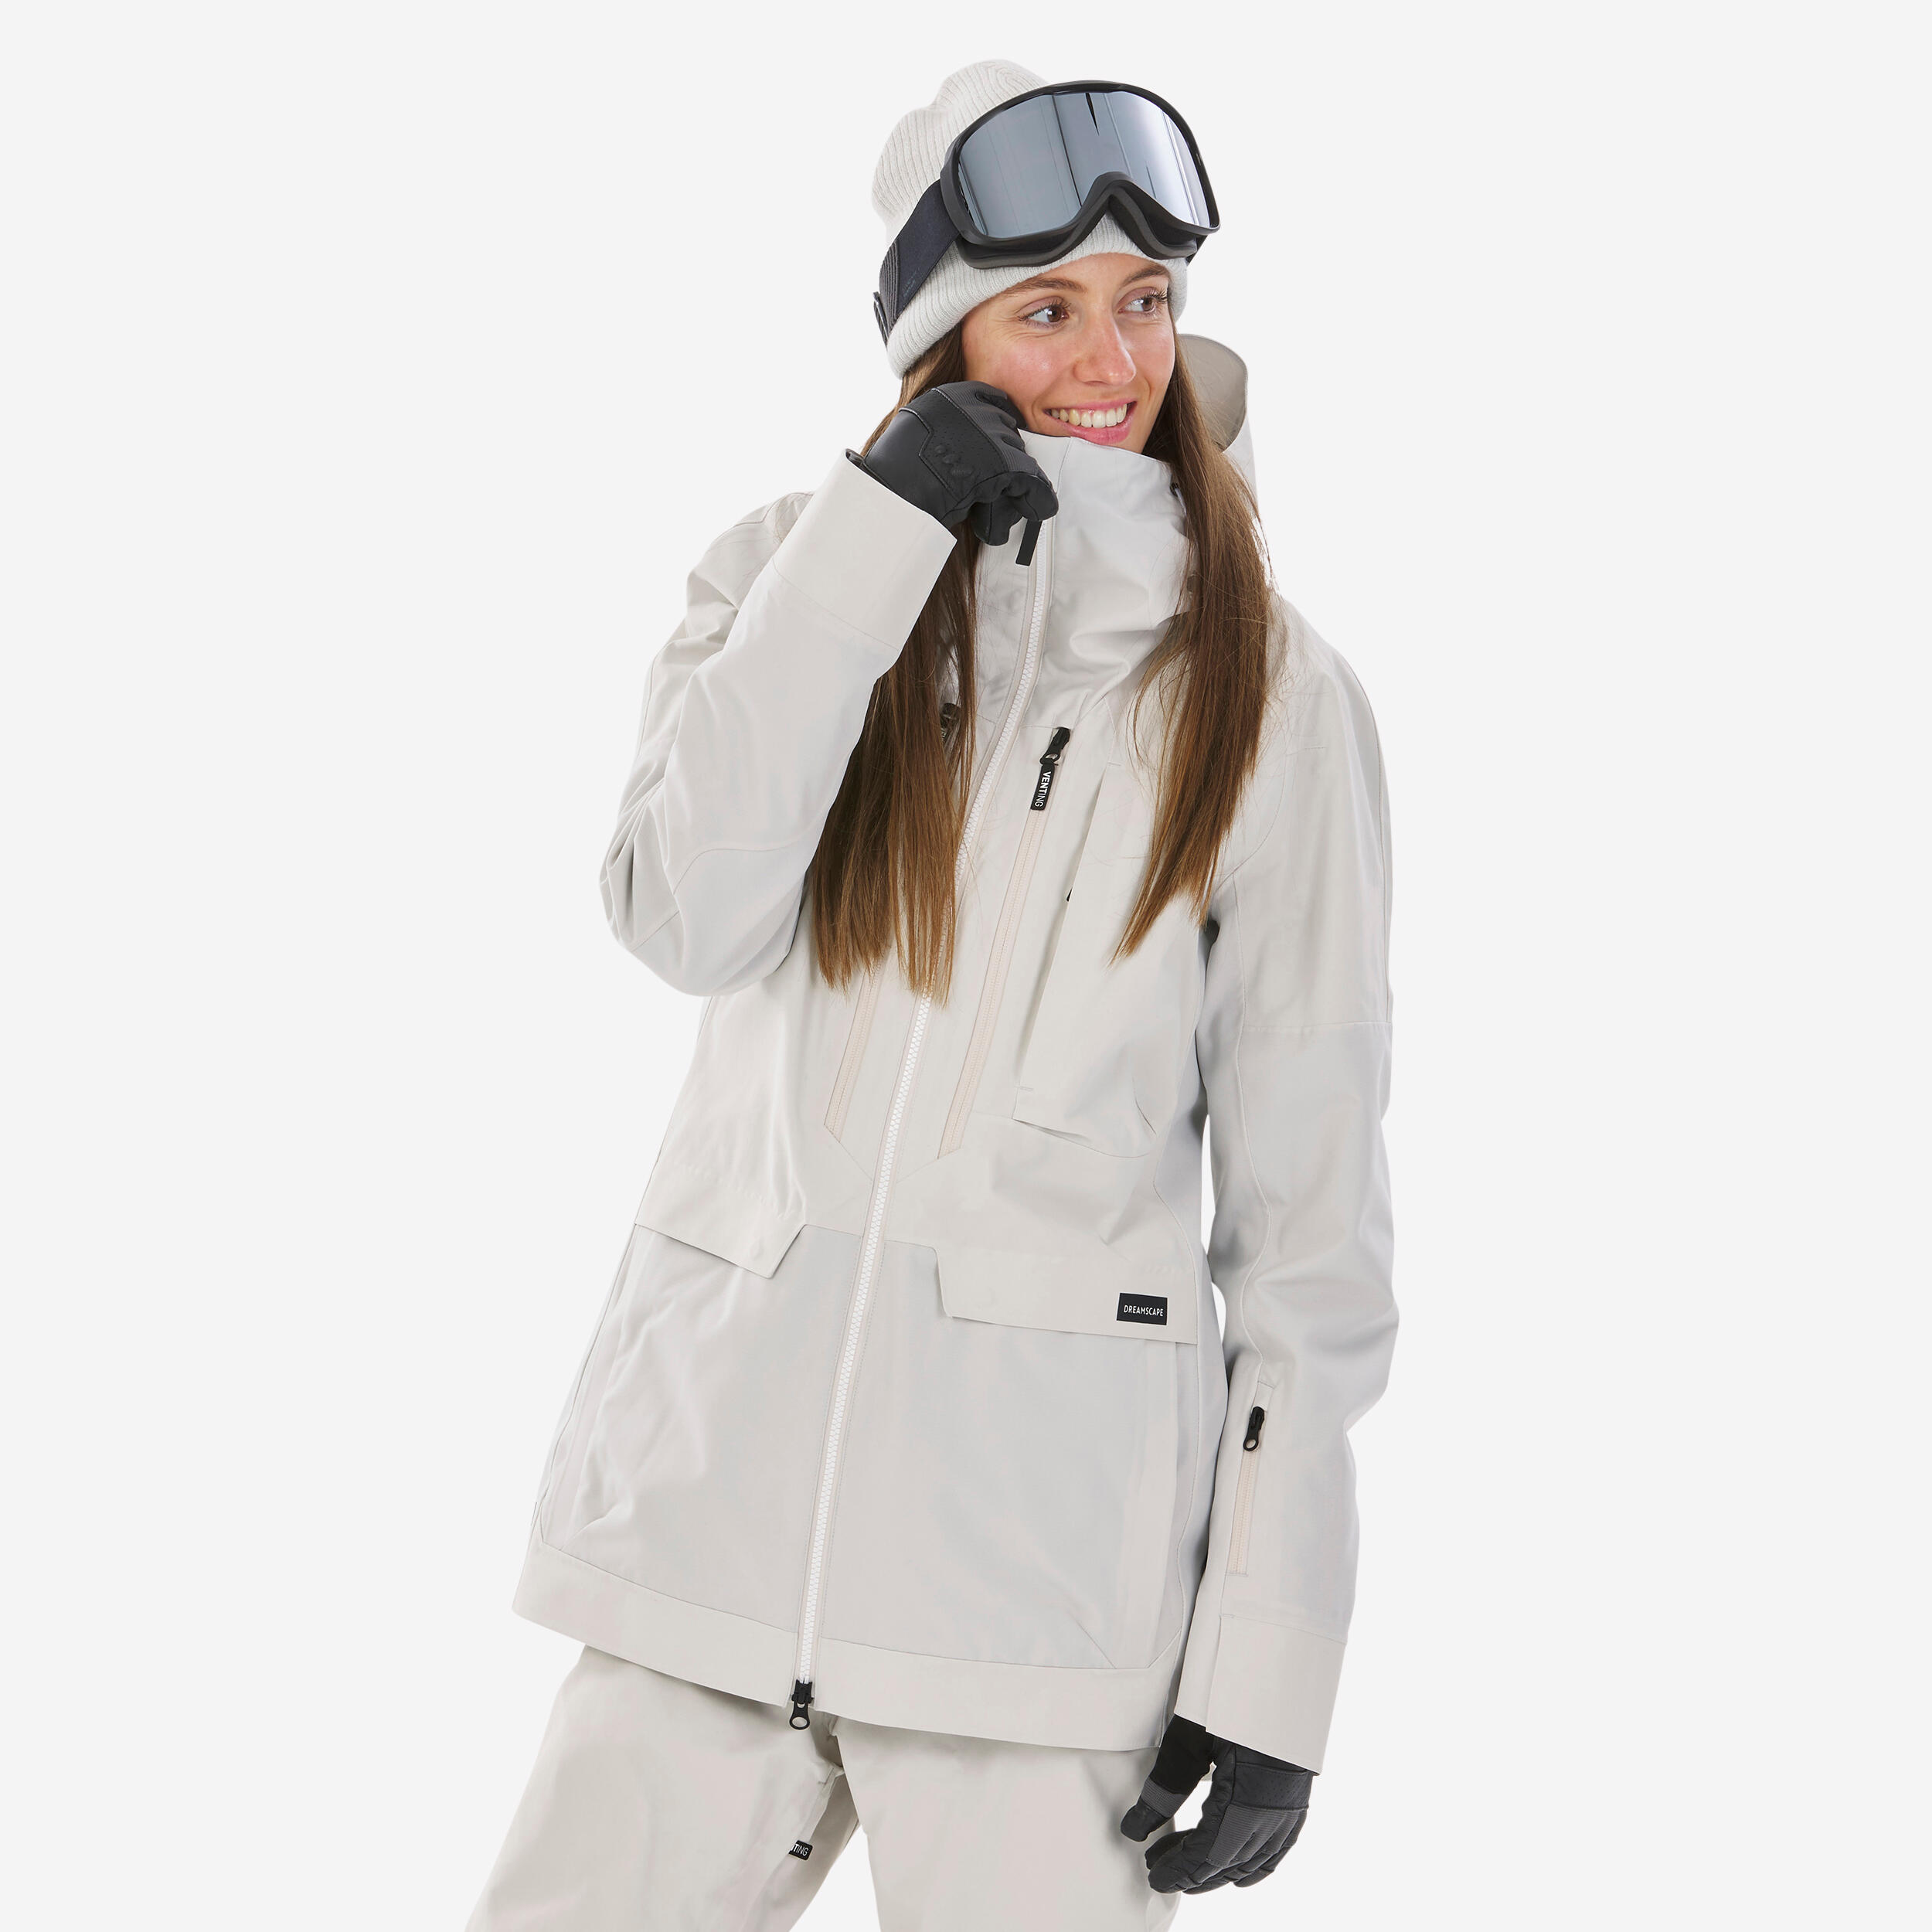 DREAMSCAPE Women's 3-in-1 Durable Snowboard Jacket - SNB 900 - Beige